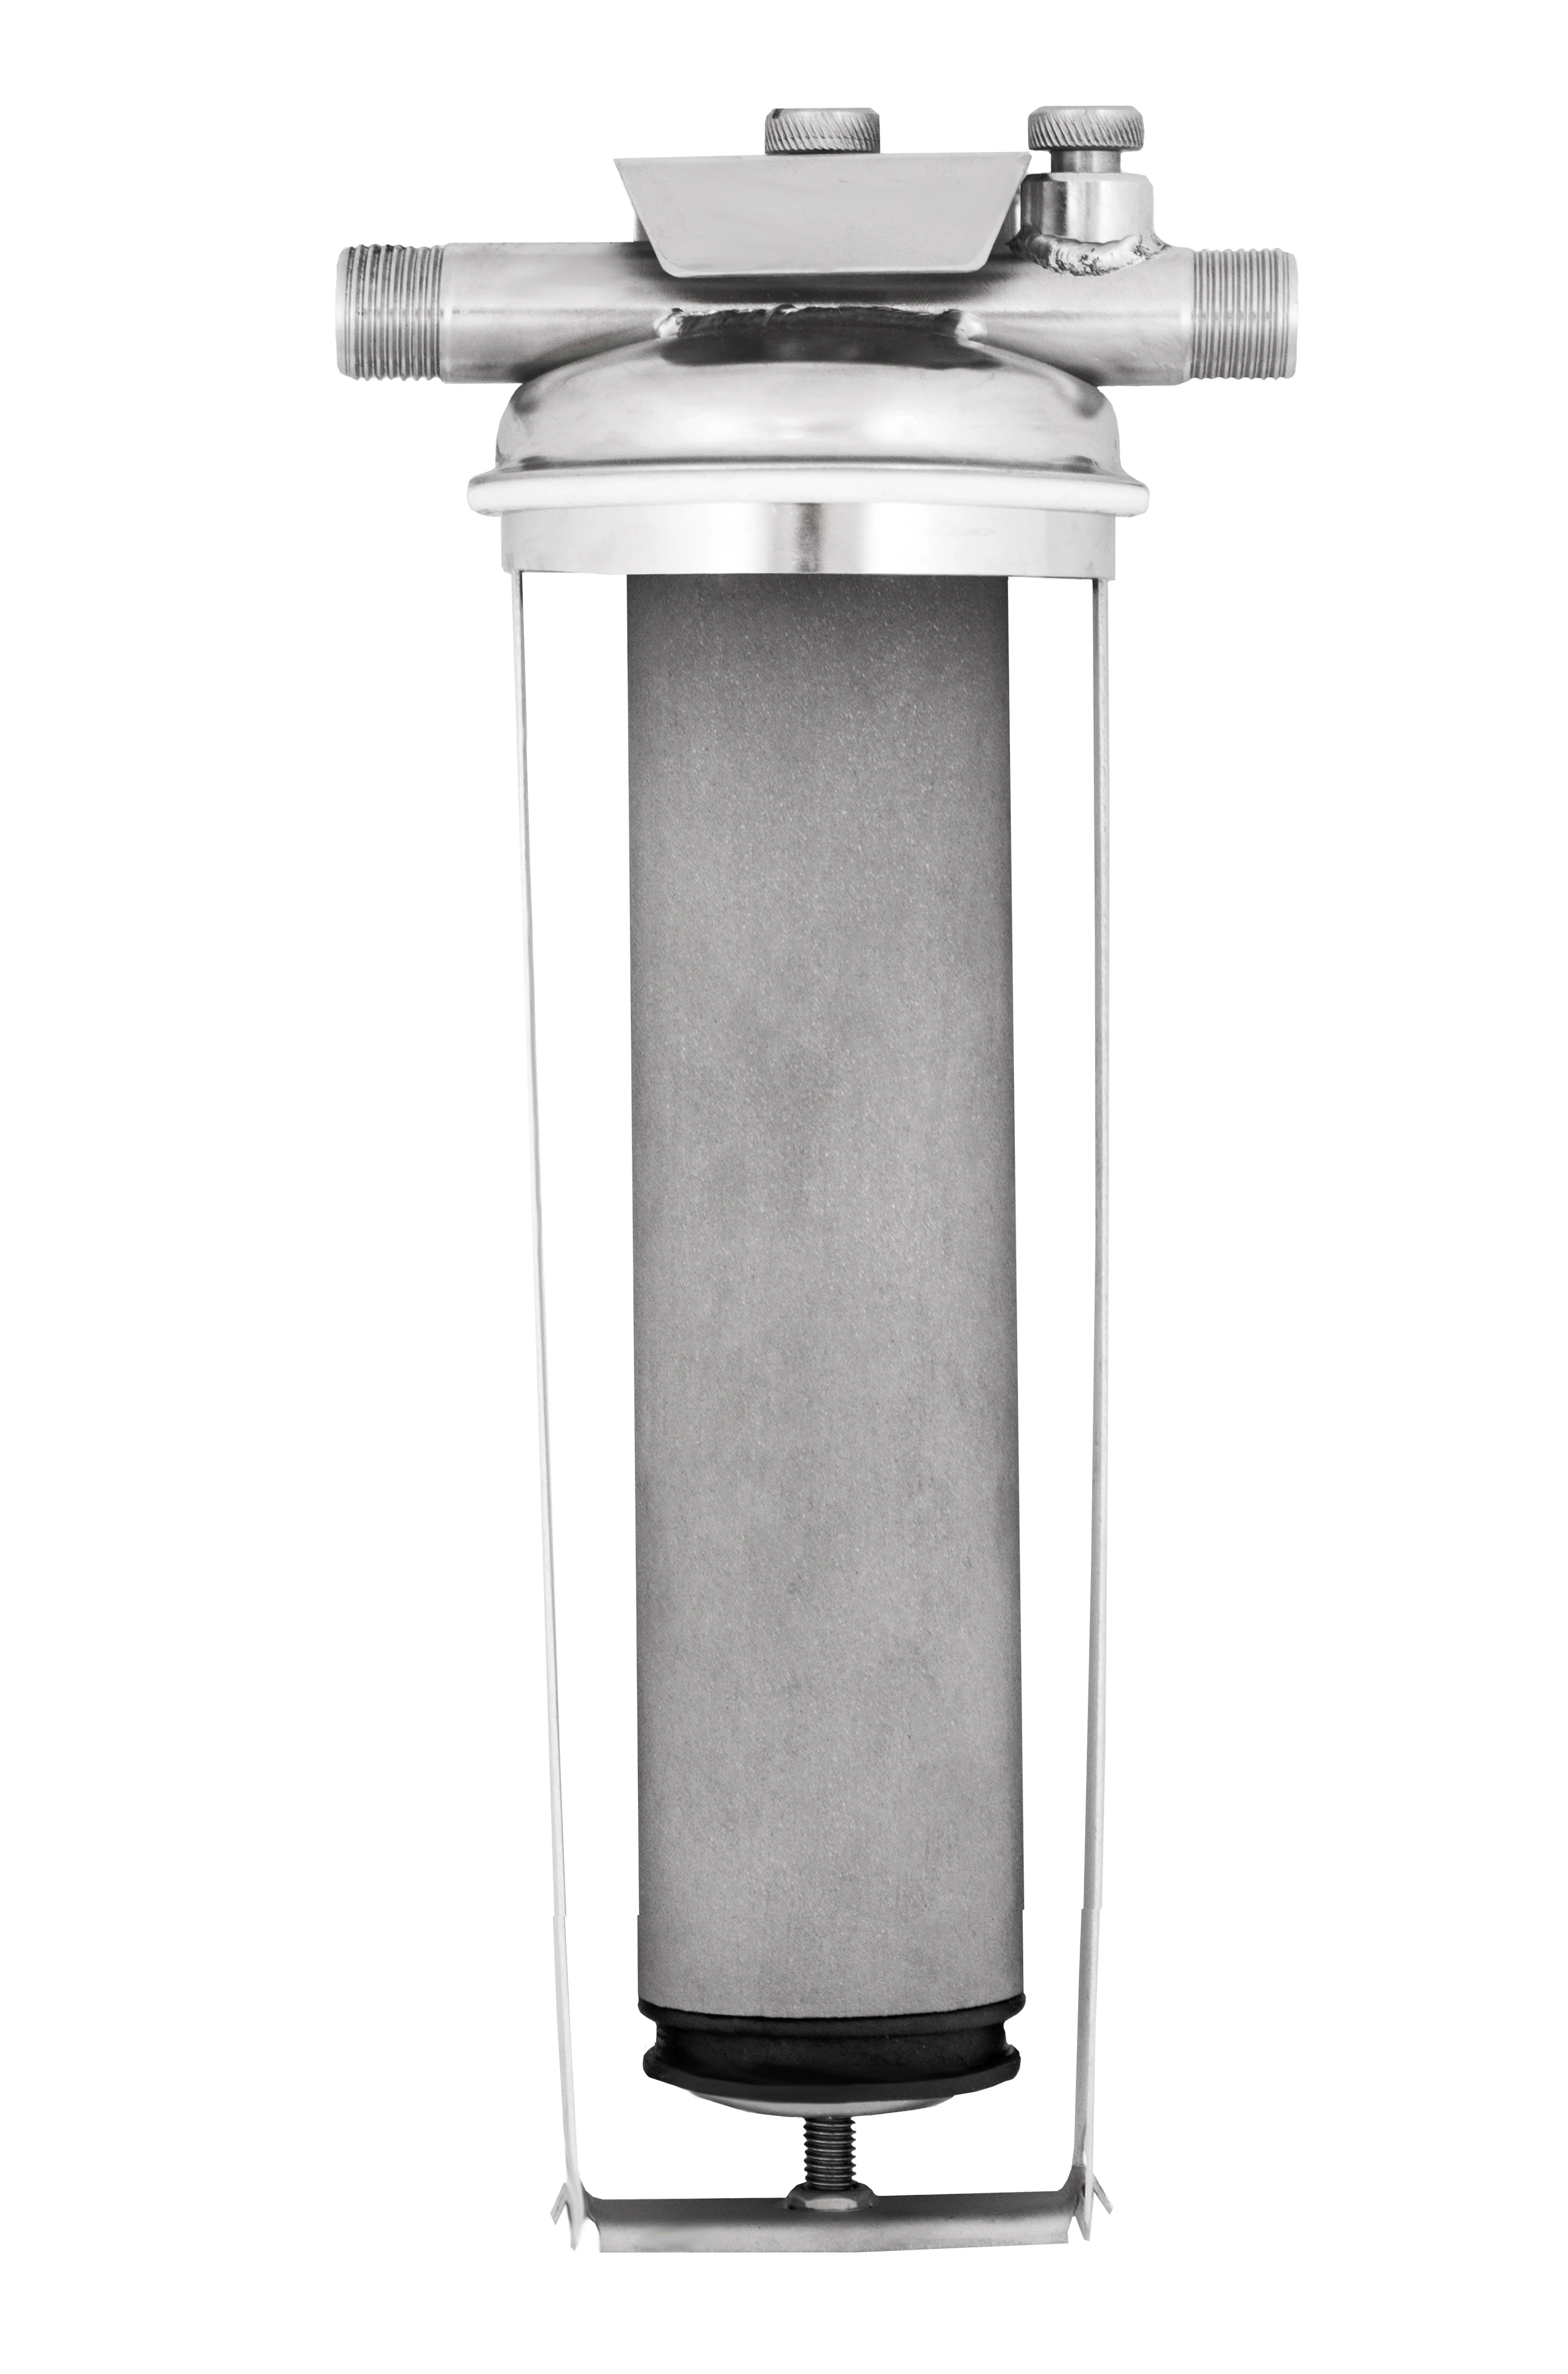 Титановый фильтр для воды цена в москве отзывы